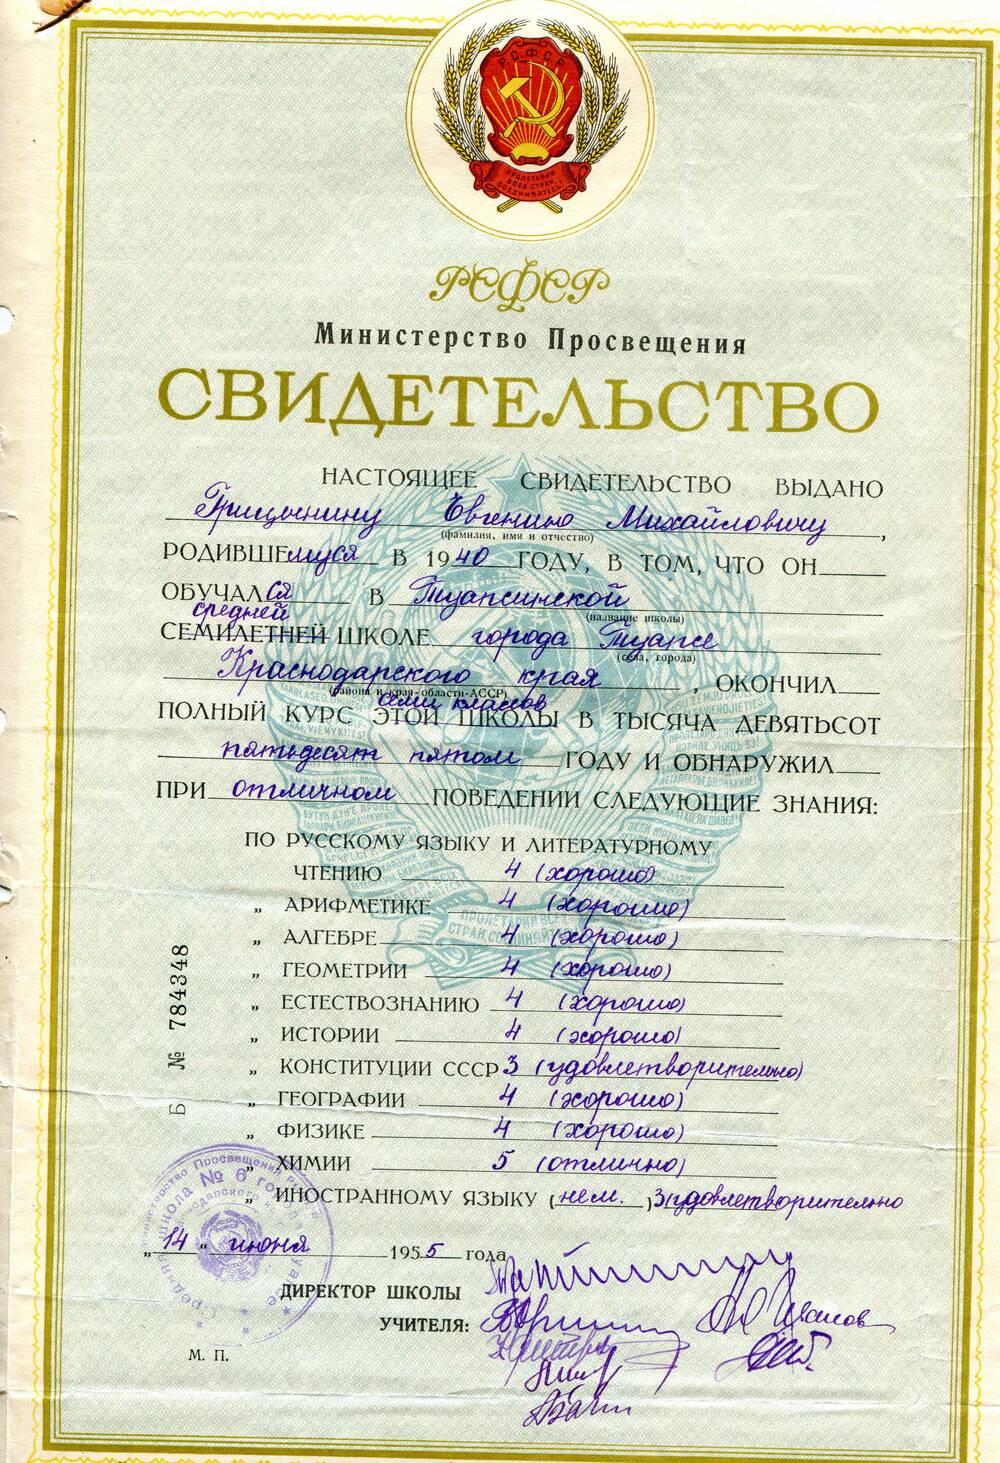 Свидетельство Б № 784348 выдано Грицынину Евгению Михайловичу, родившемуся в 1940 году, об окончании семи классов Туапсинской средней школы № 6 города Туапсе Краснодарского края.